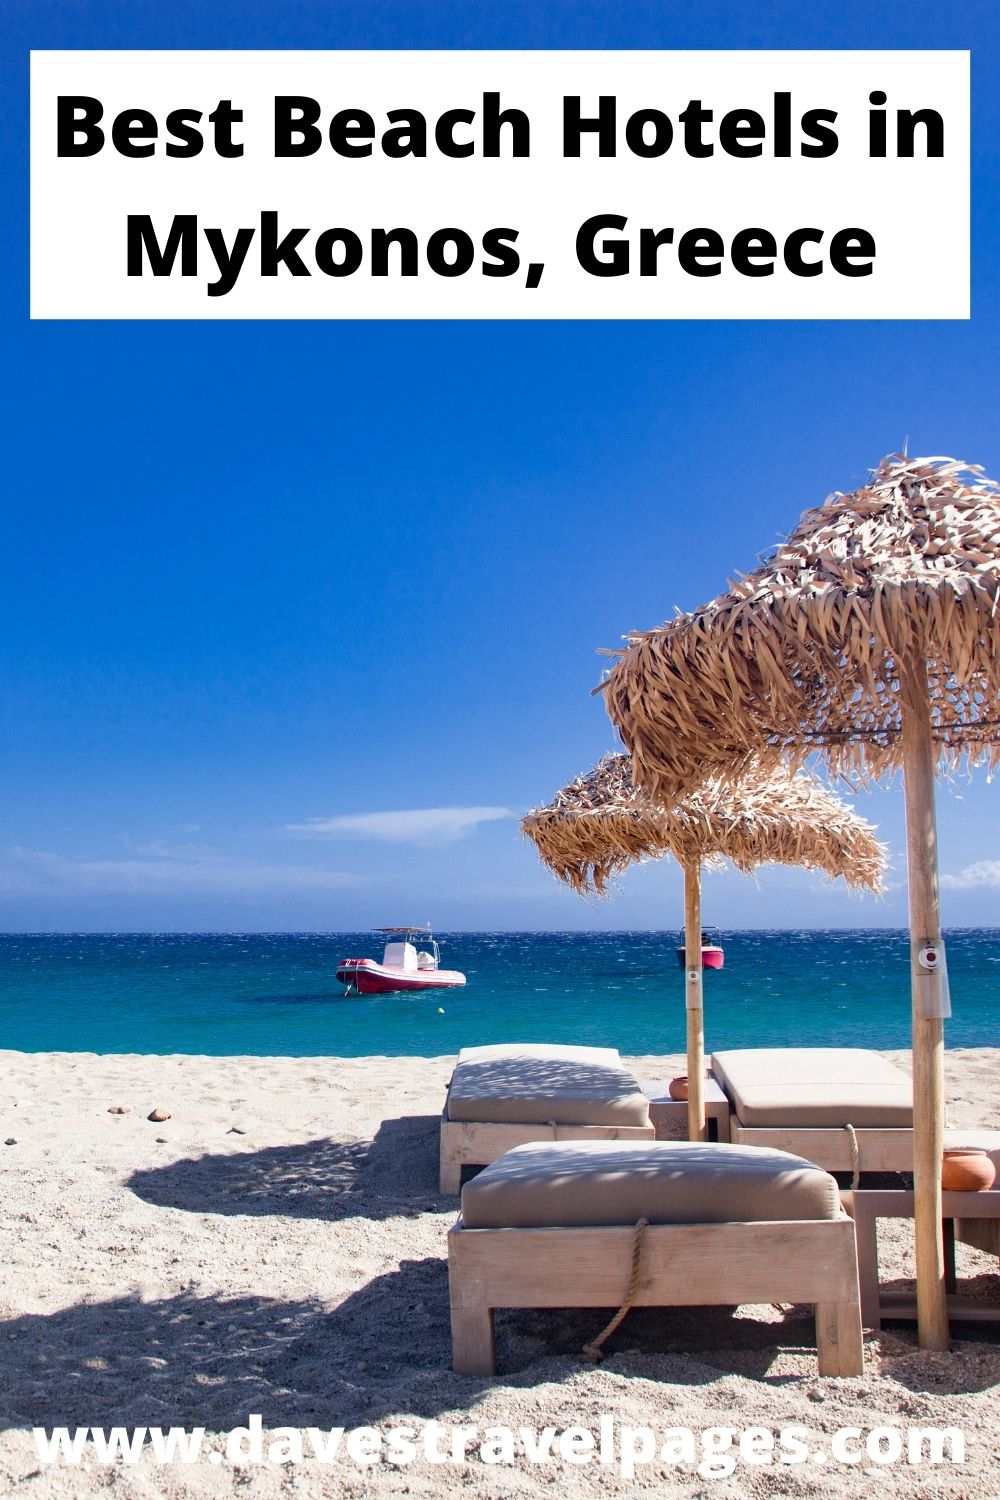 Best beach hotels in Mykonos, Greece